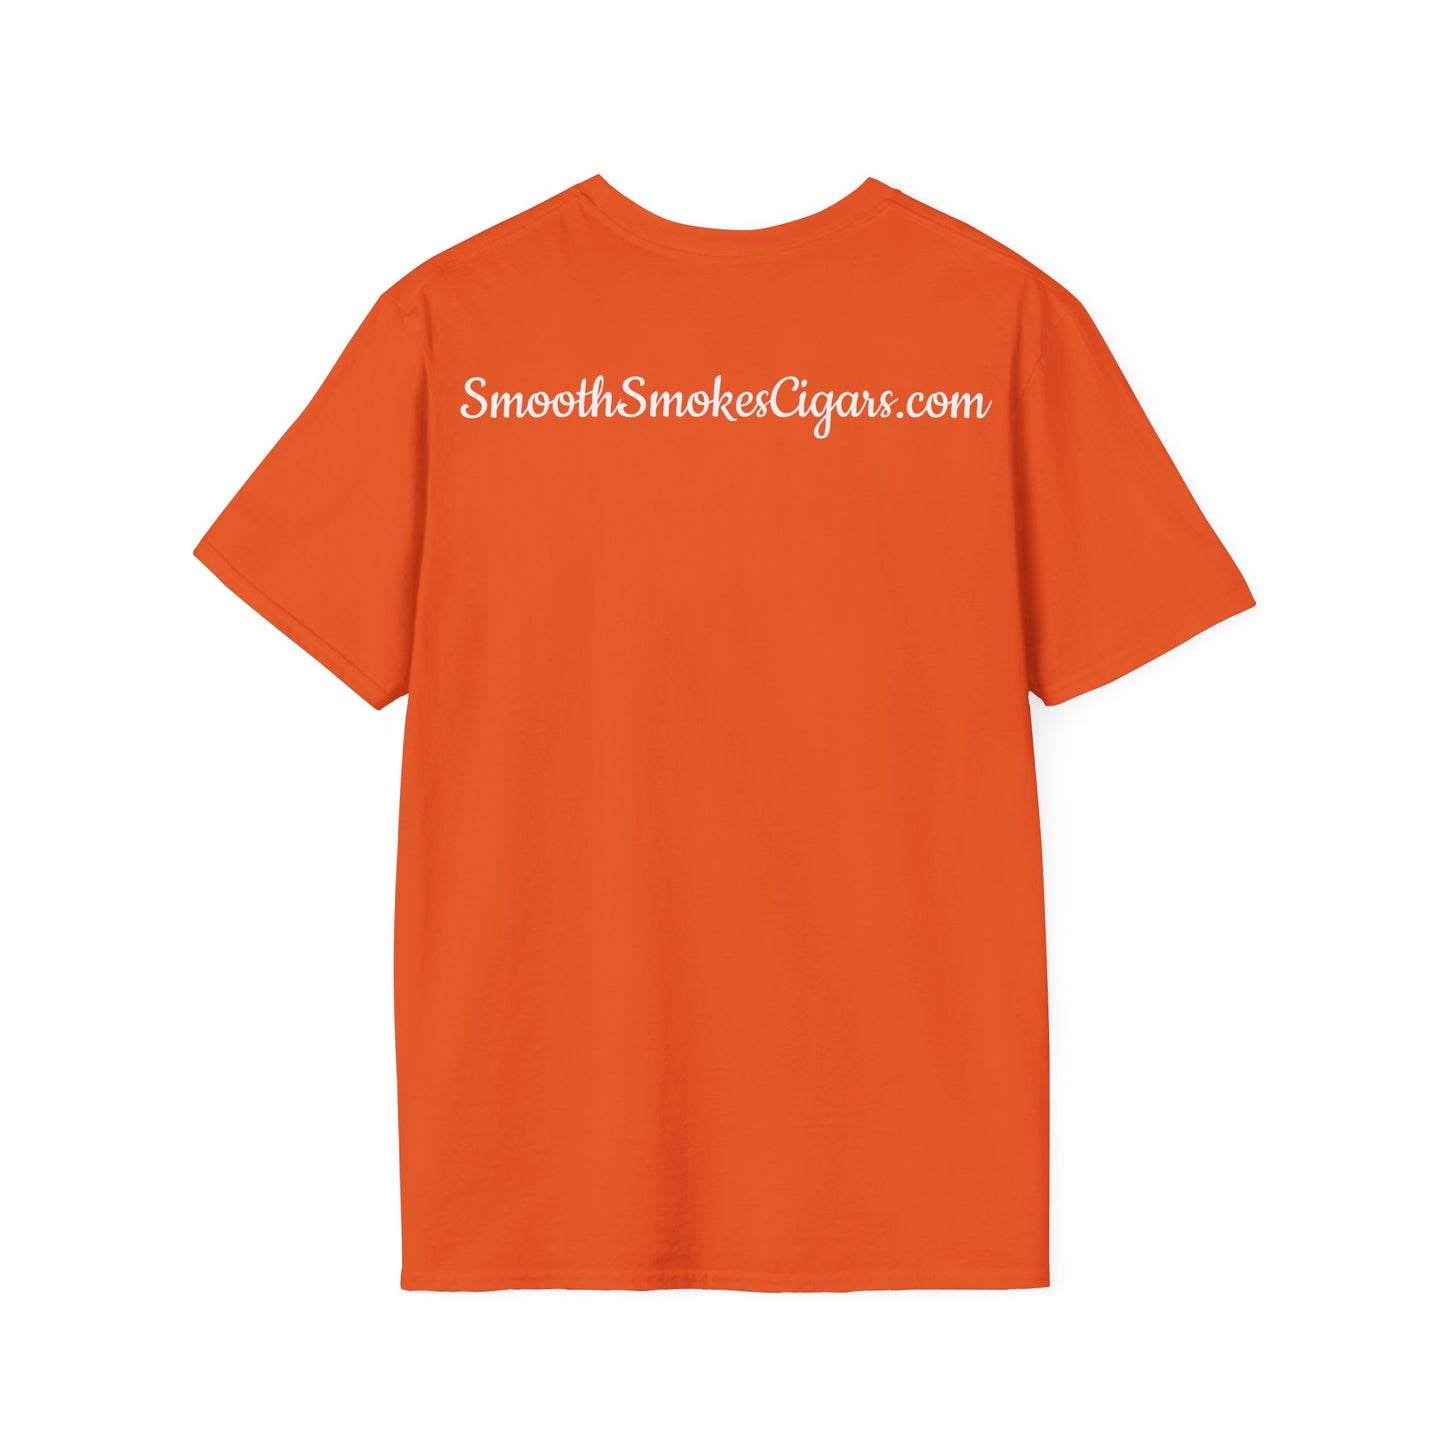 #CigarLife Unisex T-Shirt (Orange/White)